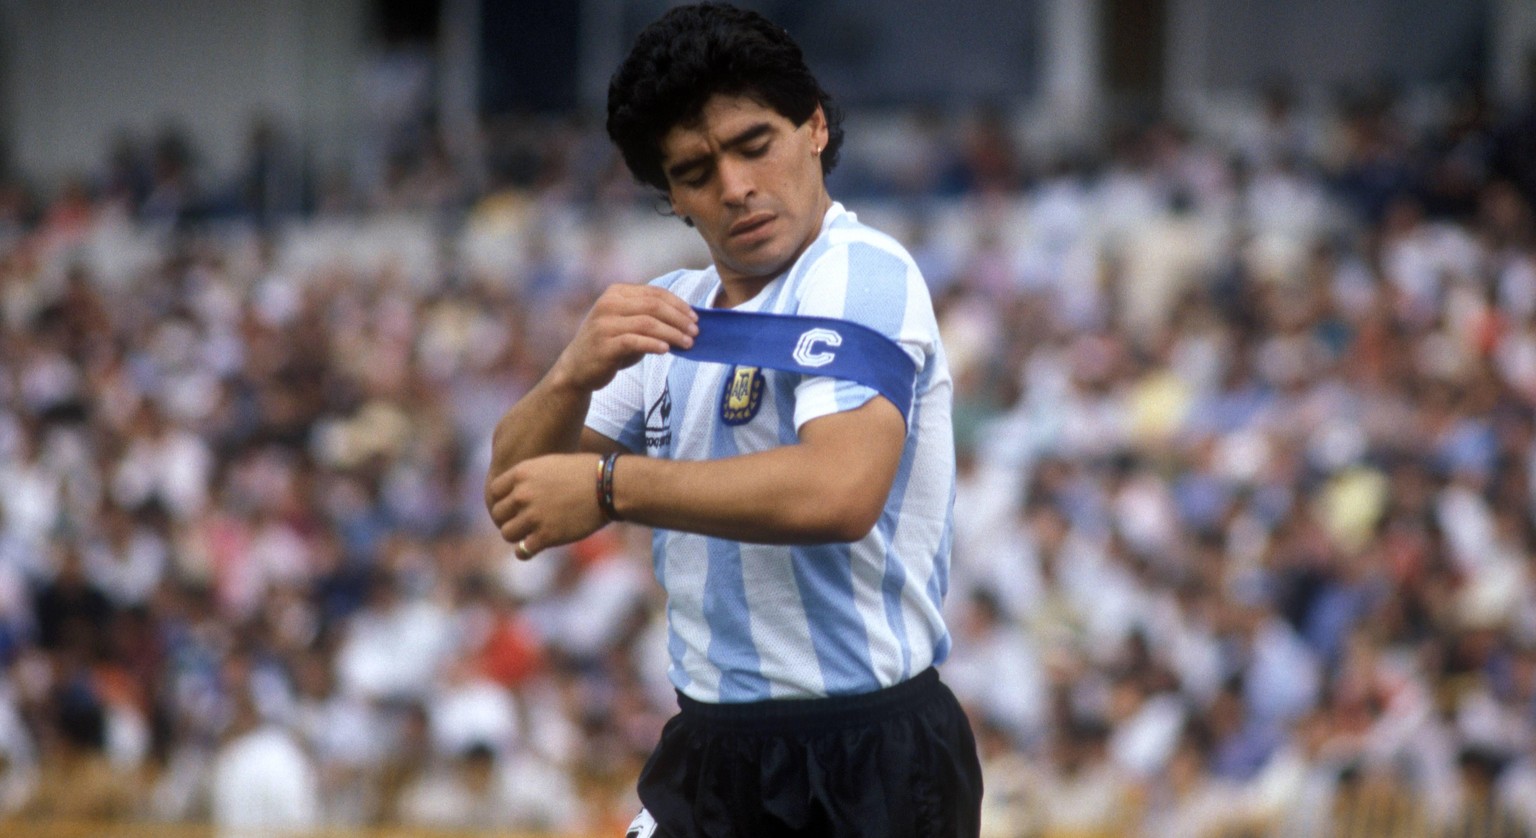 Bildnummer: 01725163 Datum: 10.06.1986 Copyright: imago/Sven Simon
Diego Armando Maradona (Argentinien) befestigt seine Kapit